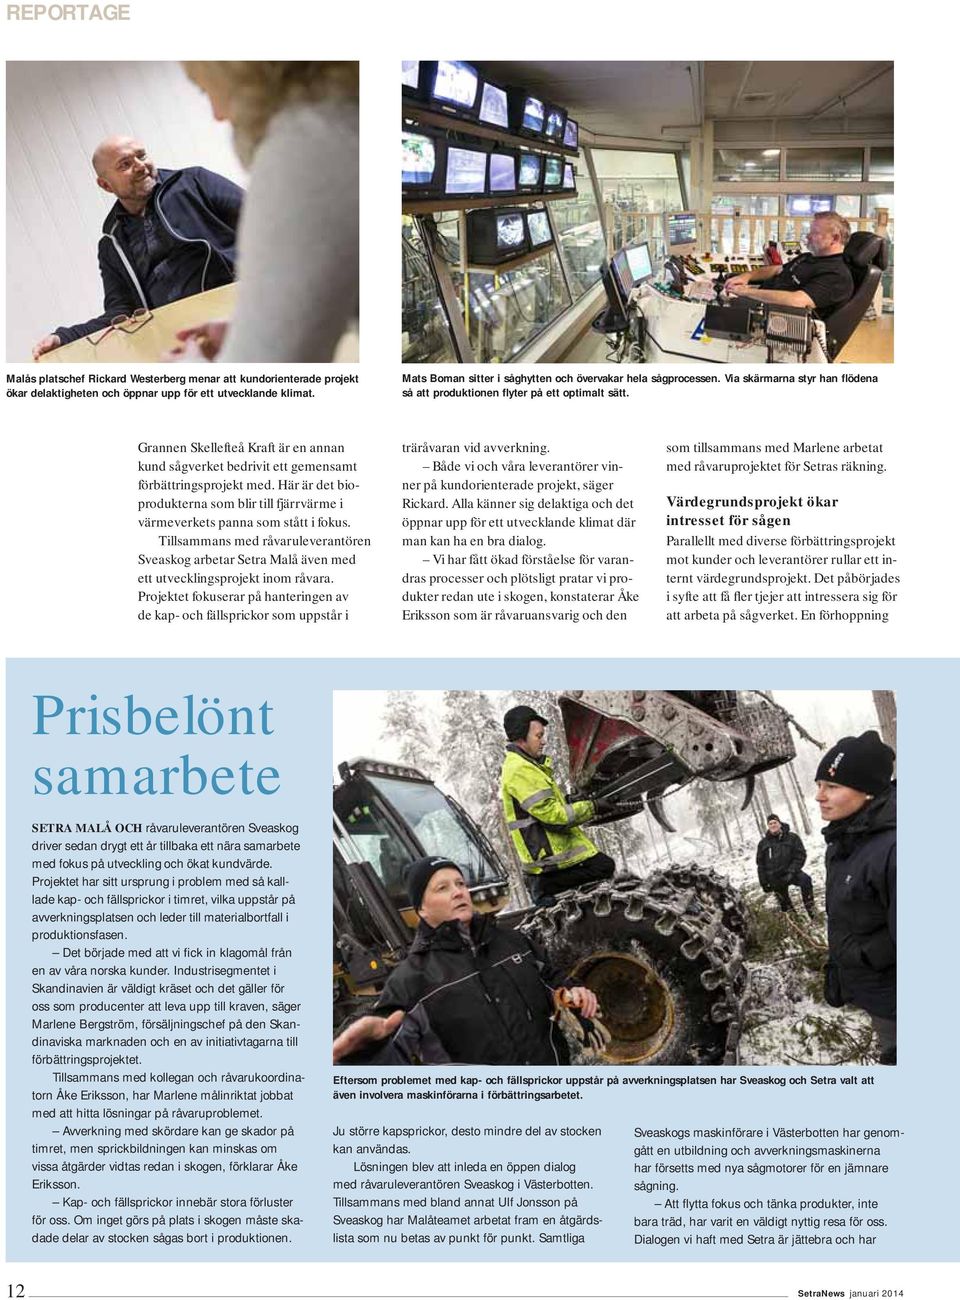 Grannen Skellefteå Kraft är en annan kund sågverket bedrivit ett gemensamt förbättringsprojekt med. Här är det bio - produkterna som blir till fjärrvärme i värmeverkets panna som stått i fokus.